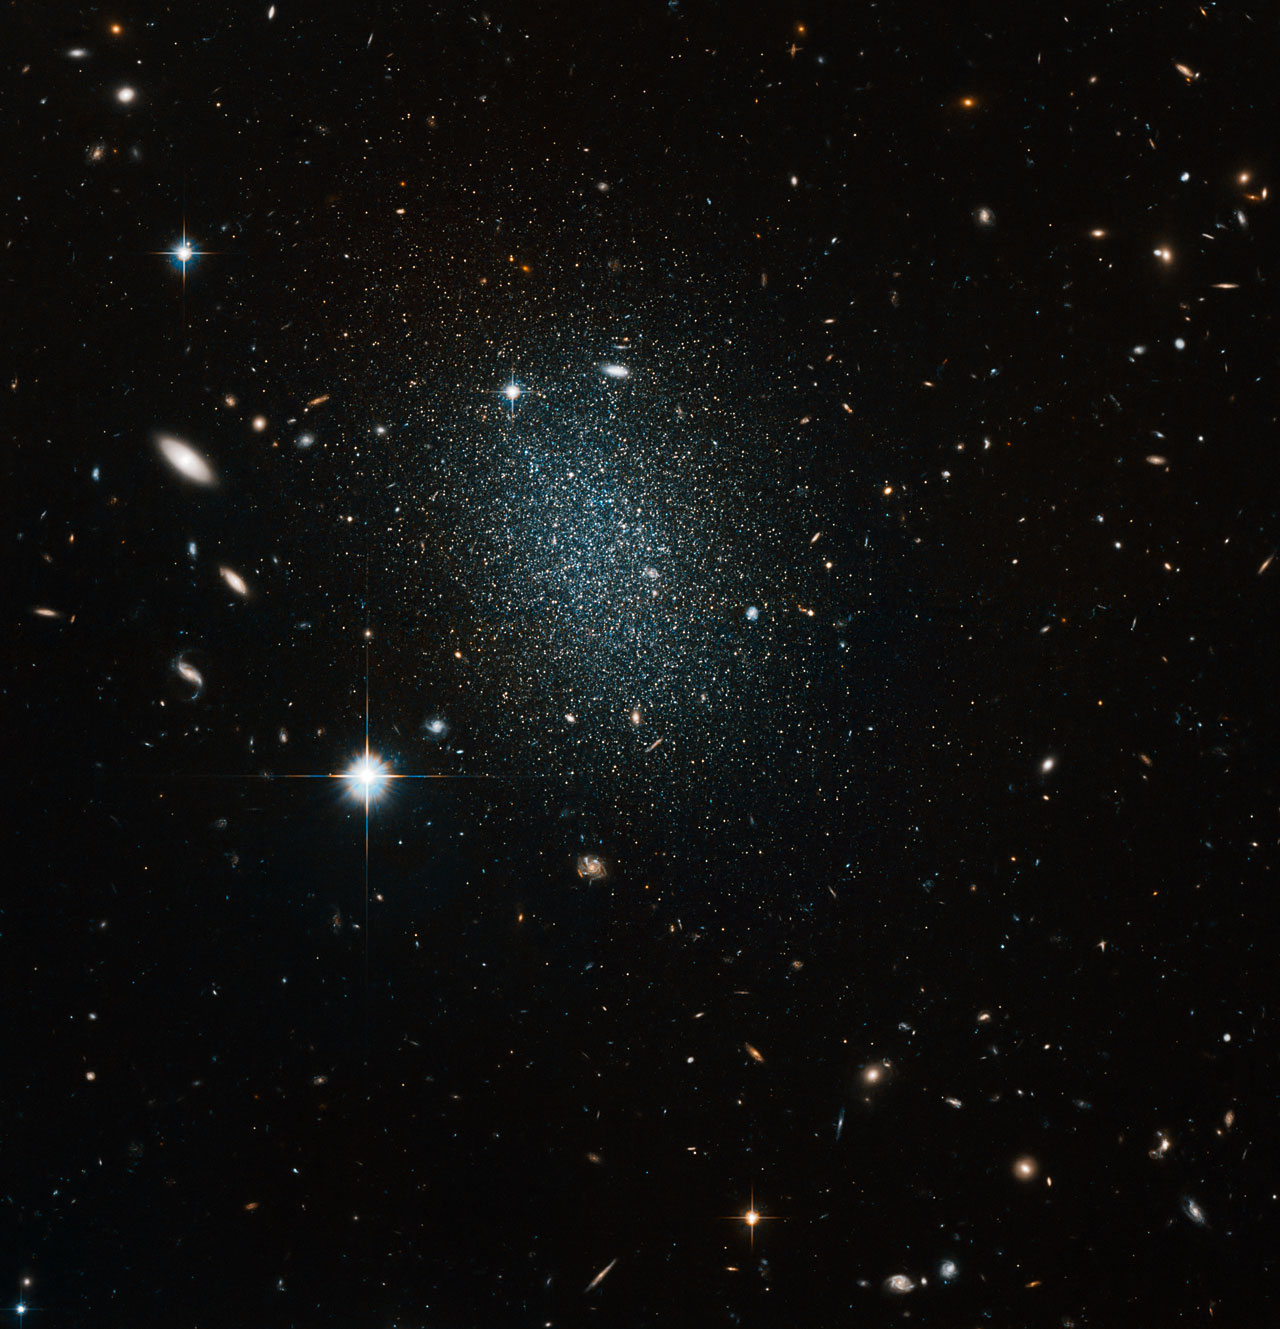 近いけれども暗い矮小銀河eso 540 030 ハッブル宇宙望遠鏡が撮影 アストロピクス